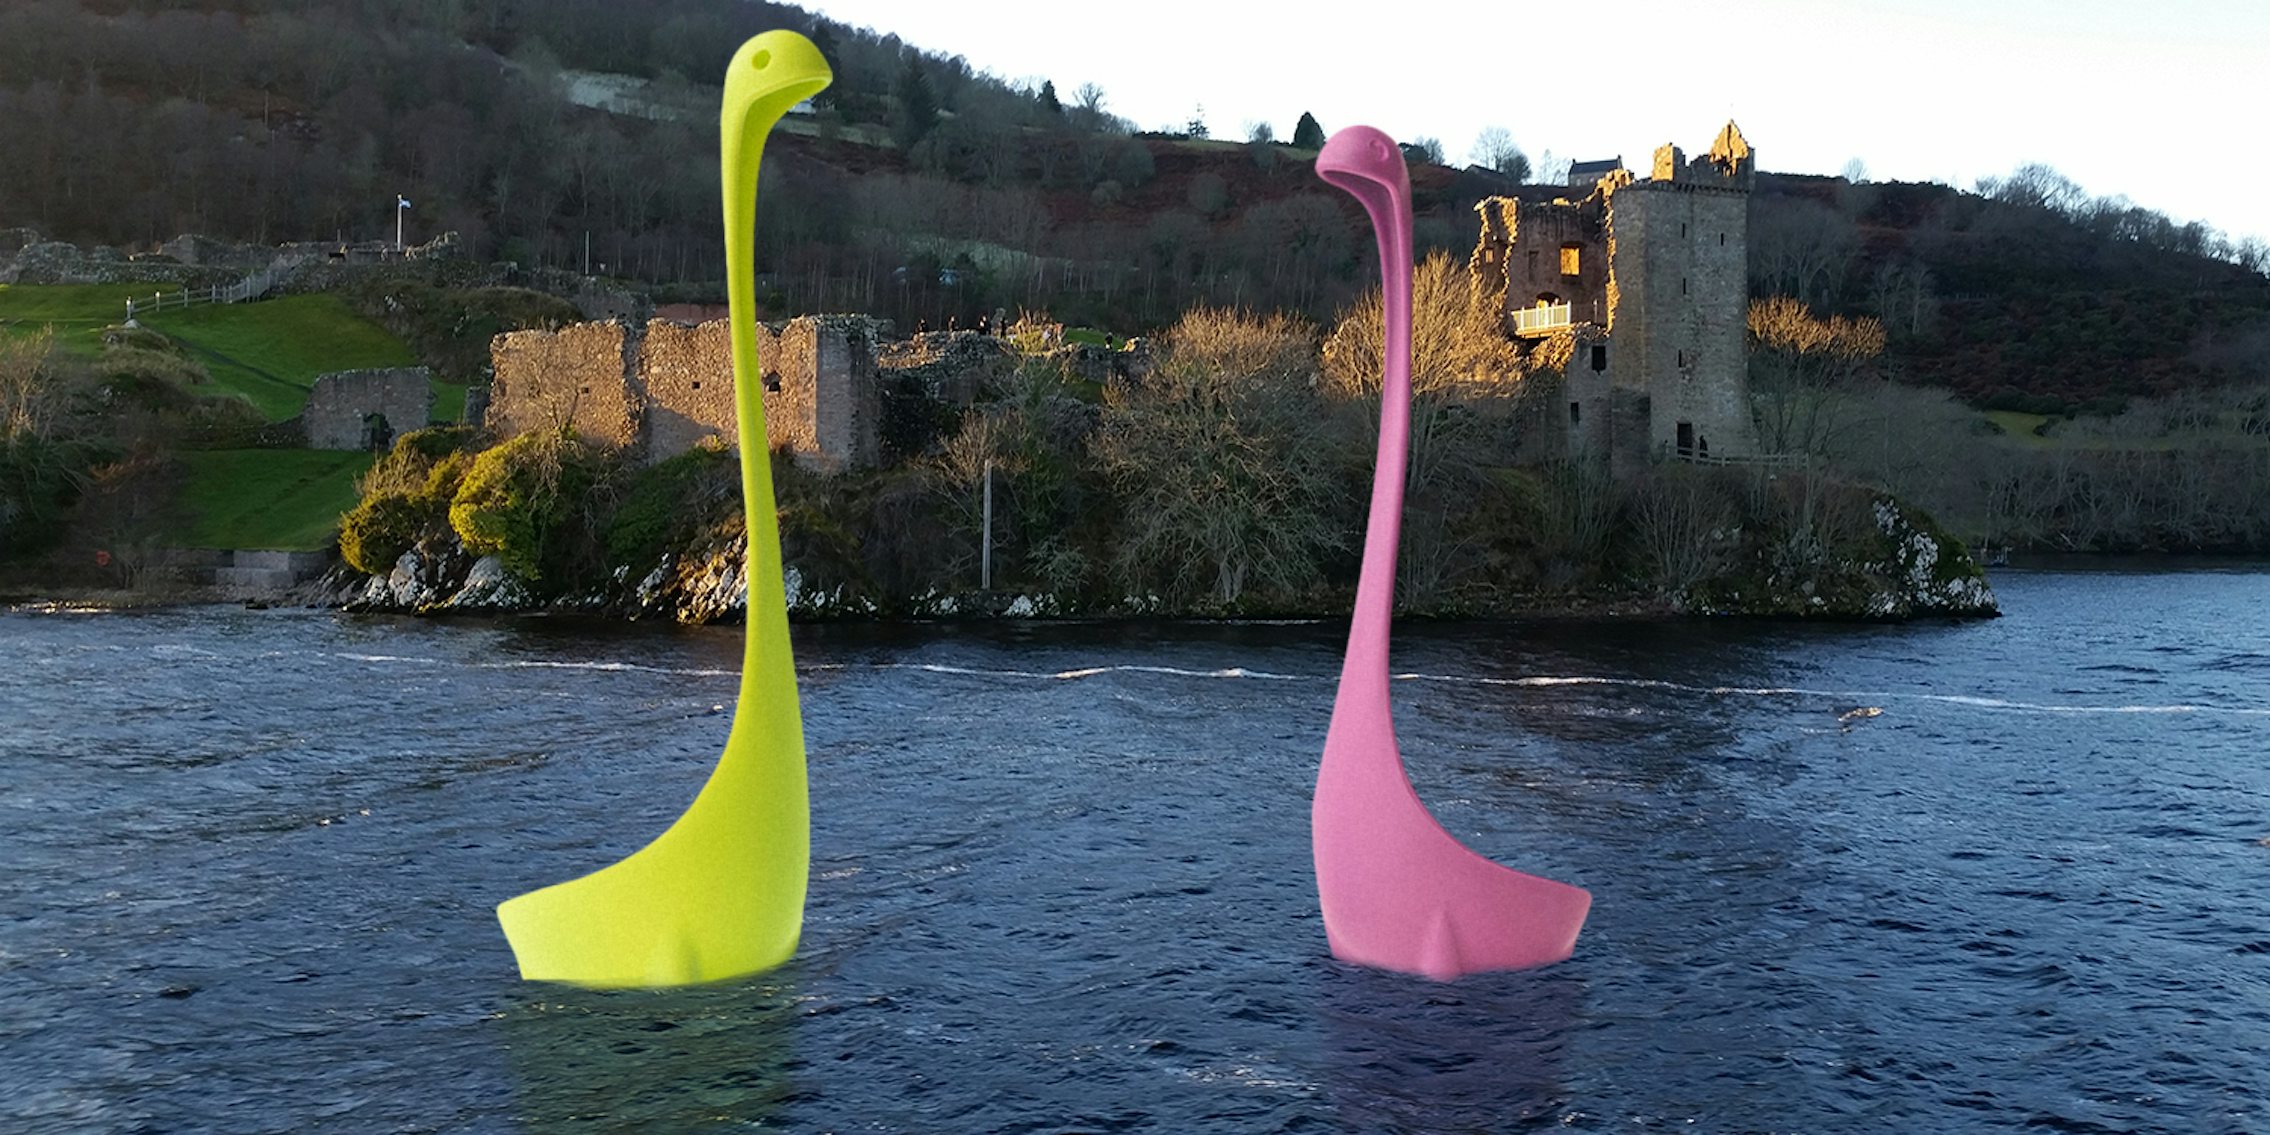 'Nessie' ladles in Loch Ness